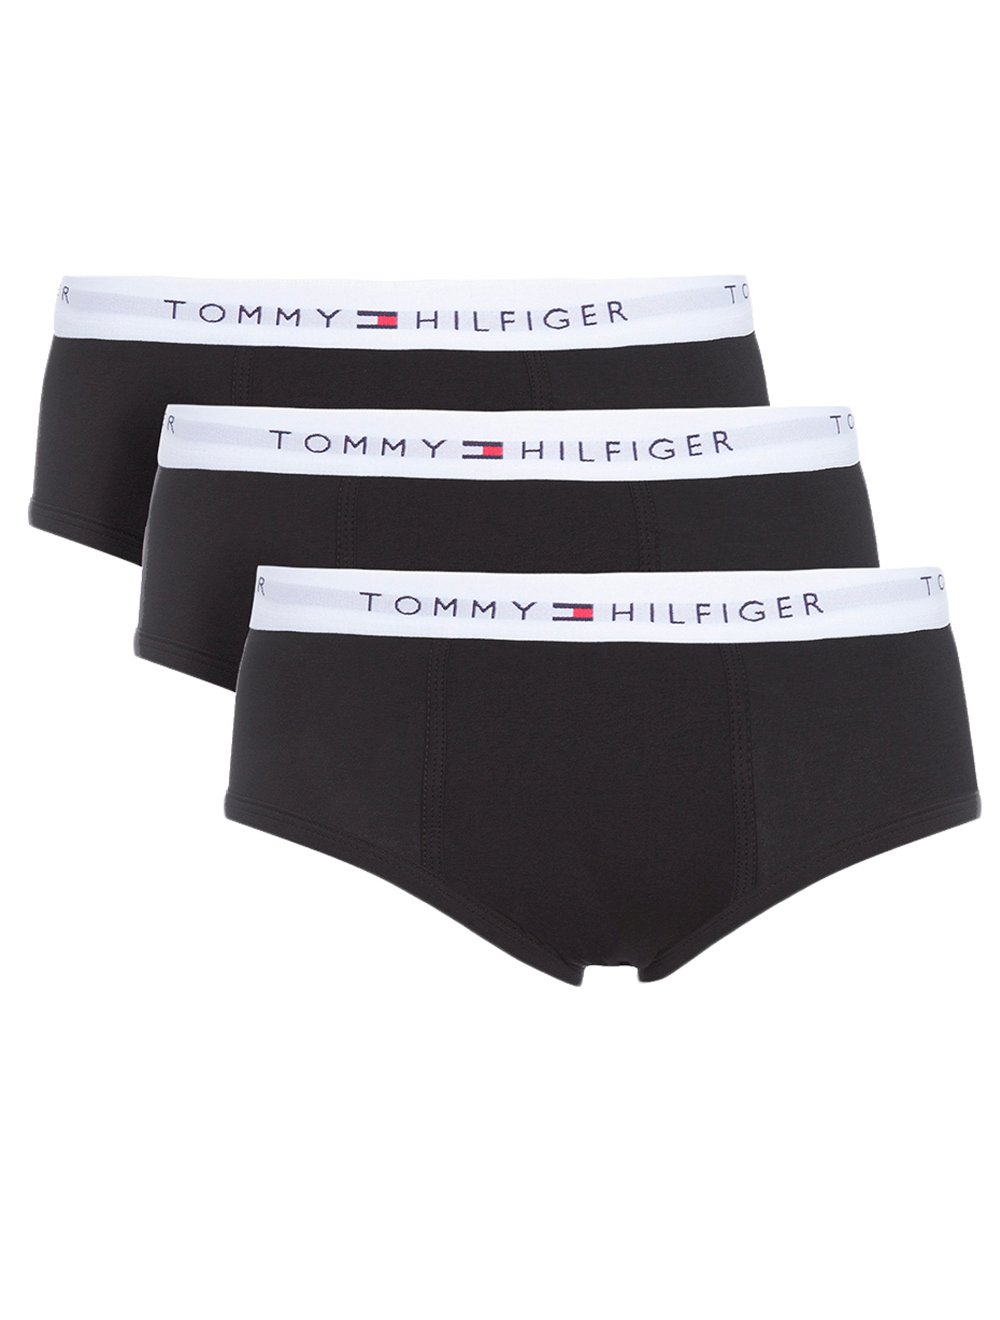 Women's underwear - Tommy Hilfiger, Up to 60 % off